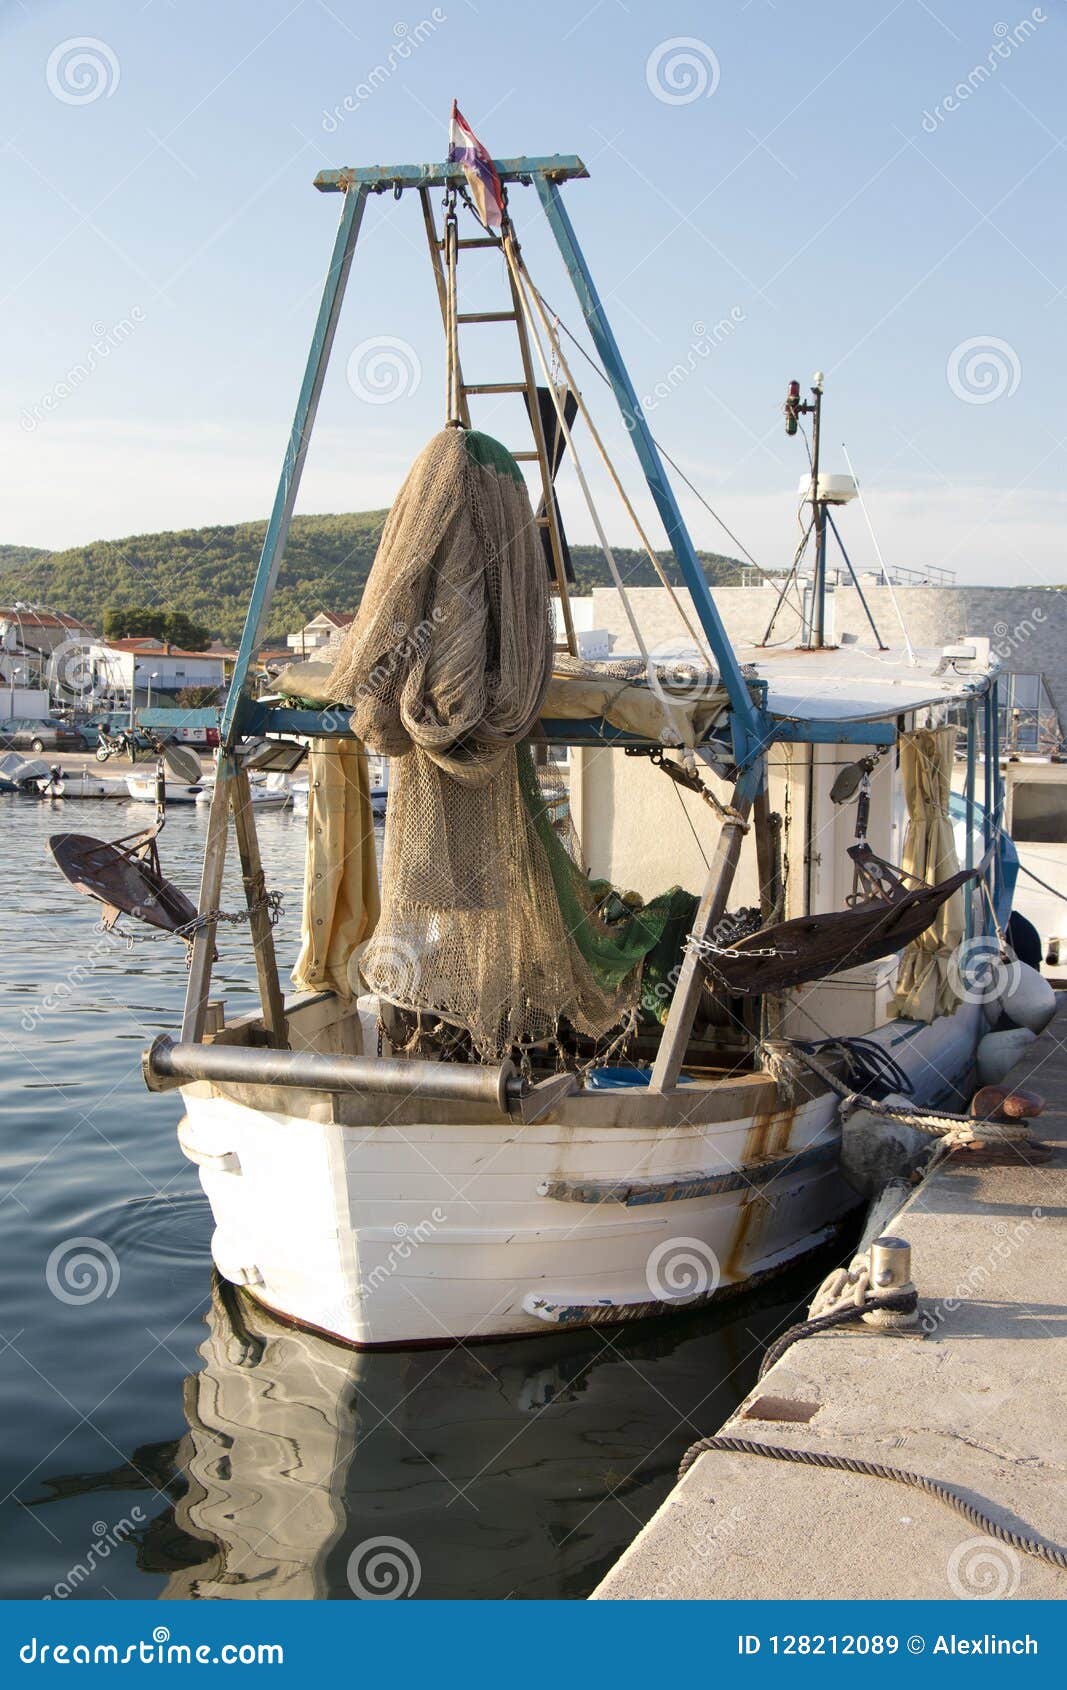 Fishing boat - Adriatic